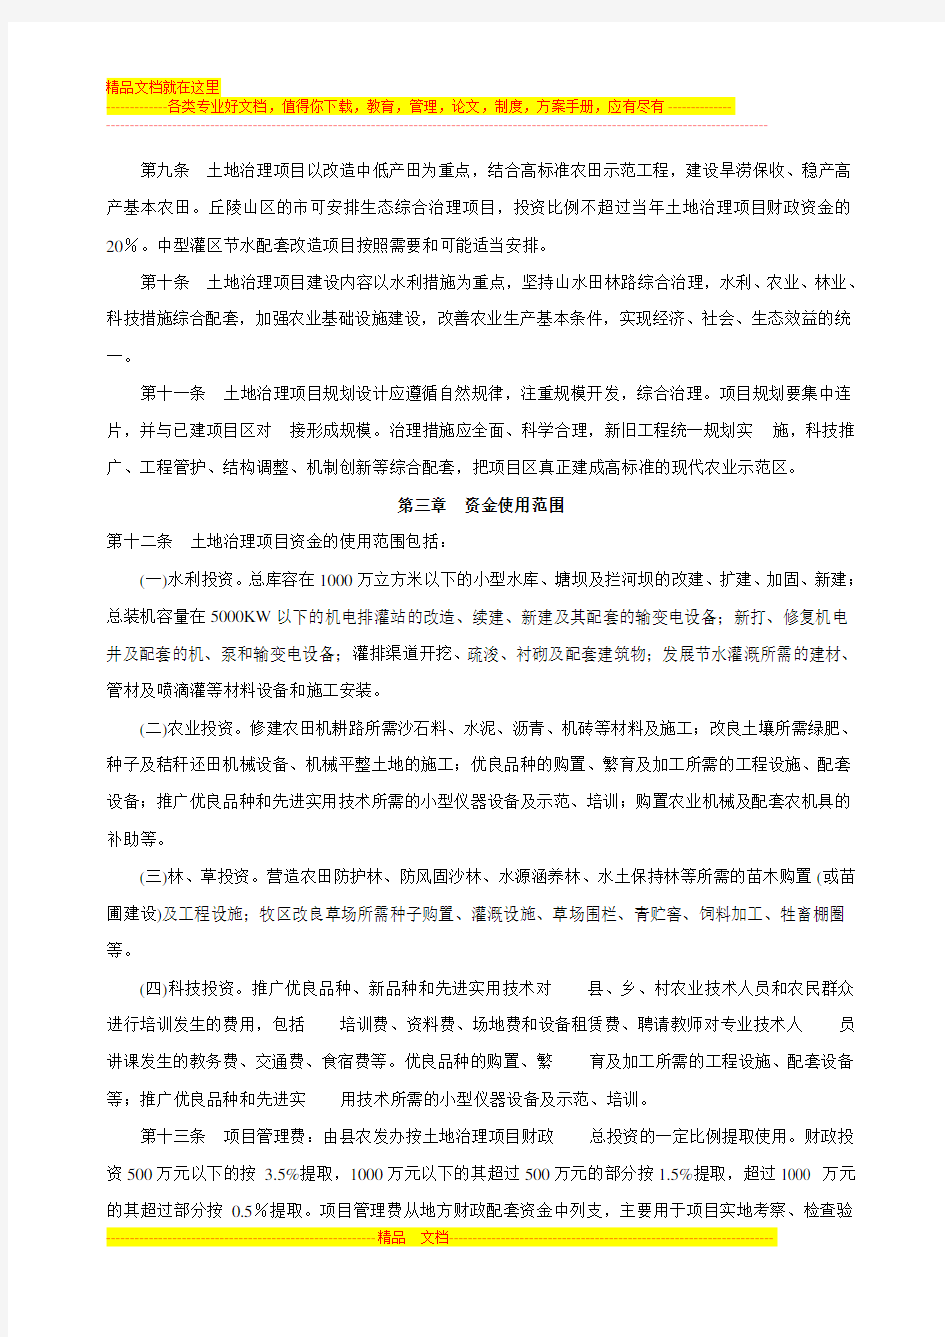 河北省农业综合开发土地治理项目管理办法(试行)